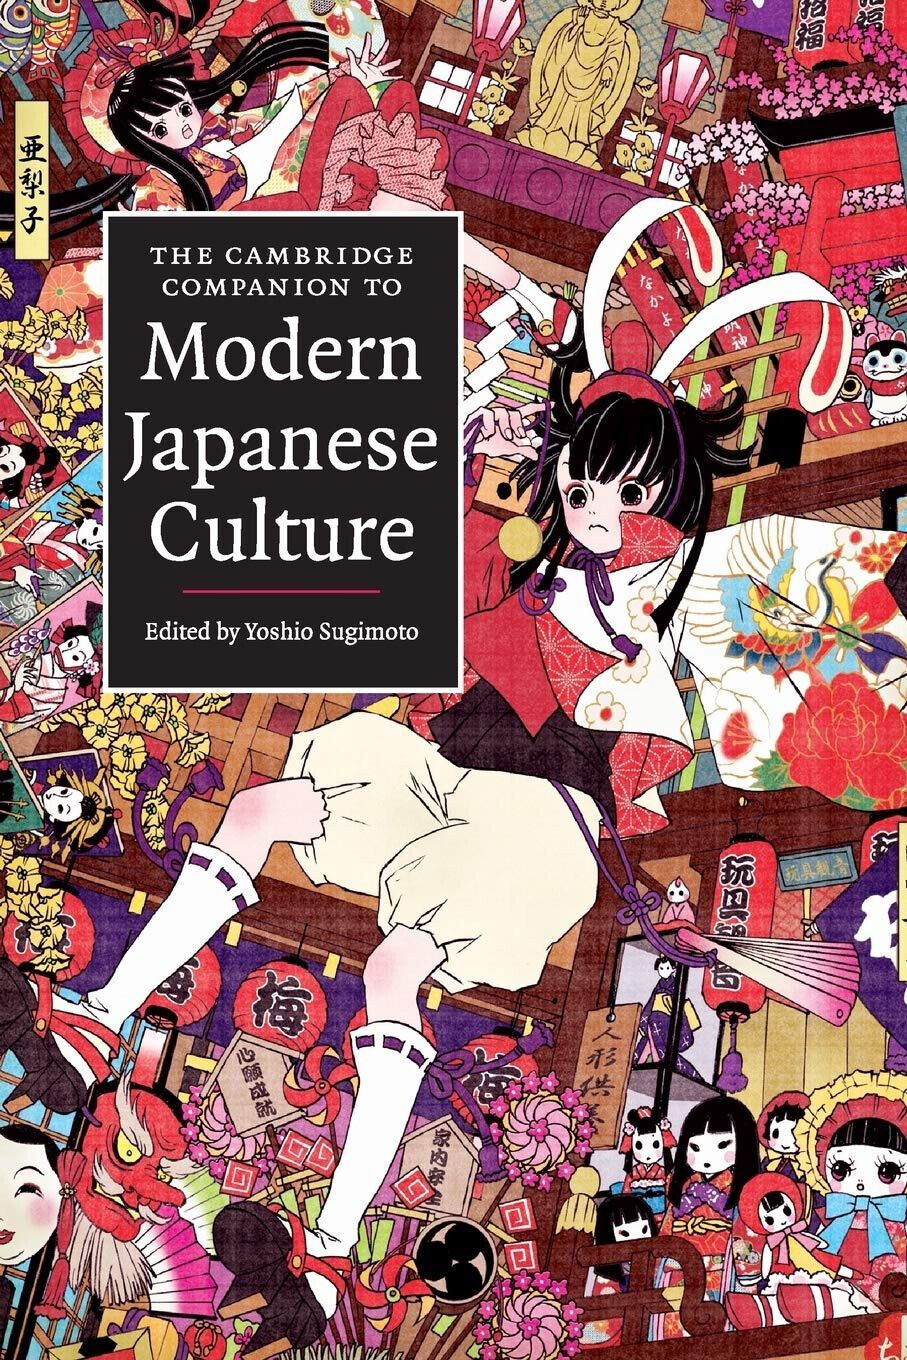 The Cambridge Companion to Modern Japanese Culture - Yoshio Sugimoto - 2009